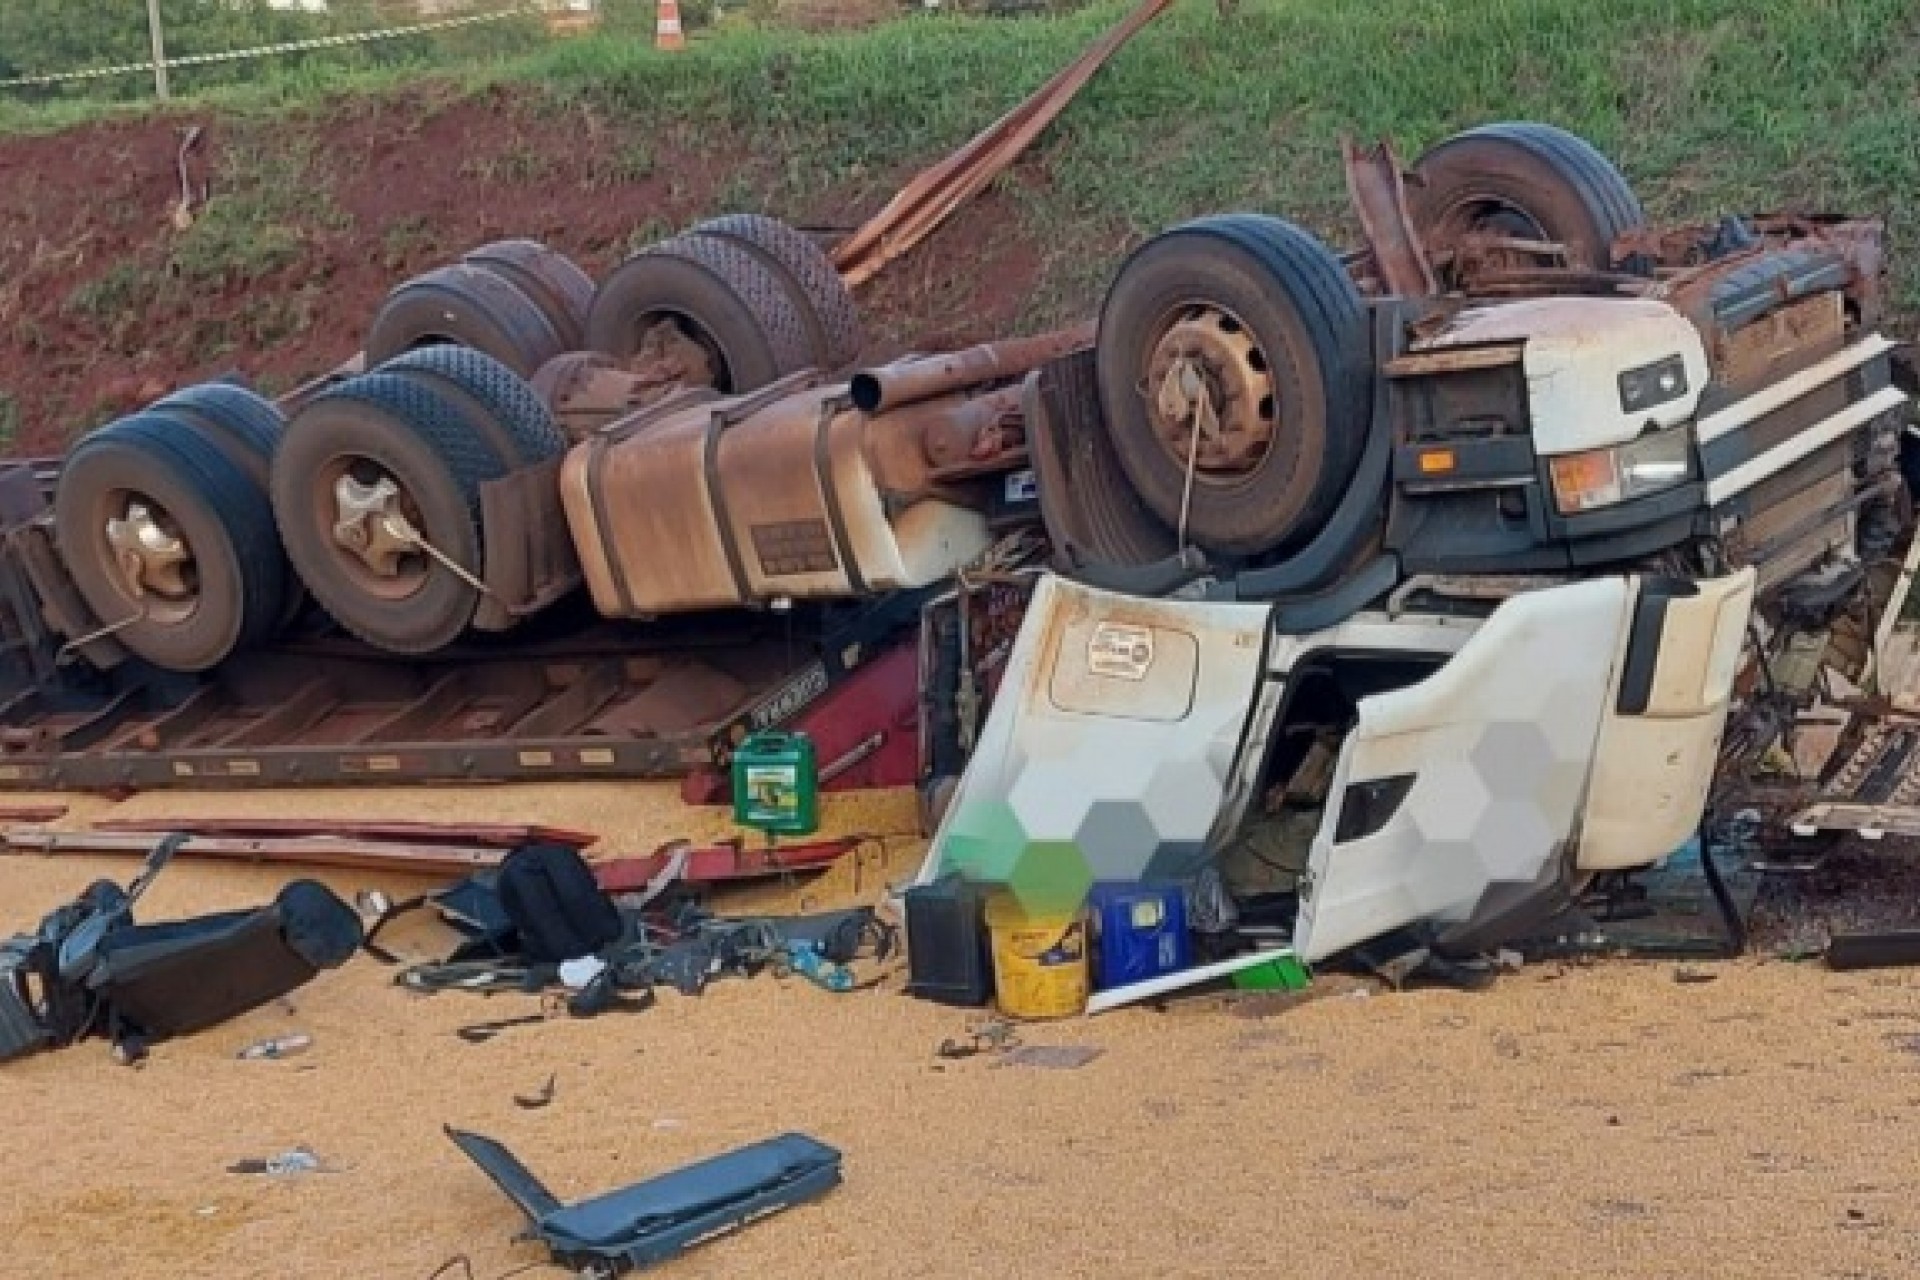 Motorista morre após tombamento de caminhão em São Miguel do Iguaçu